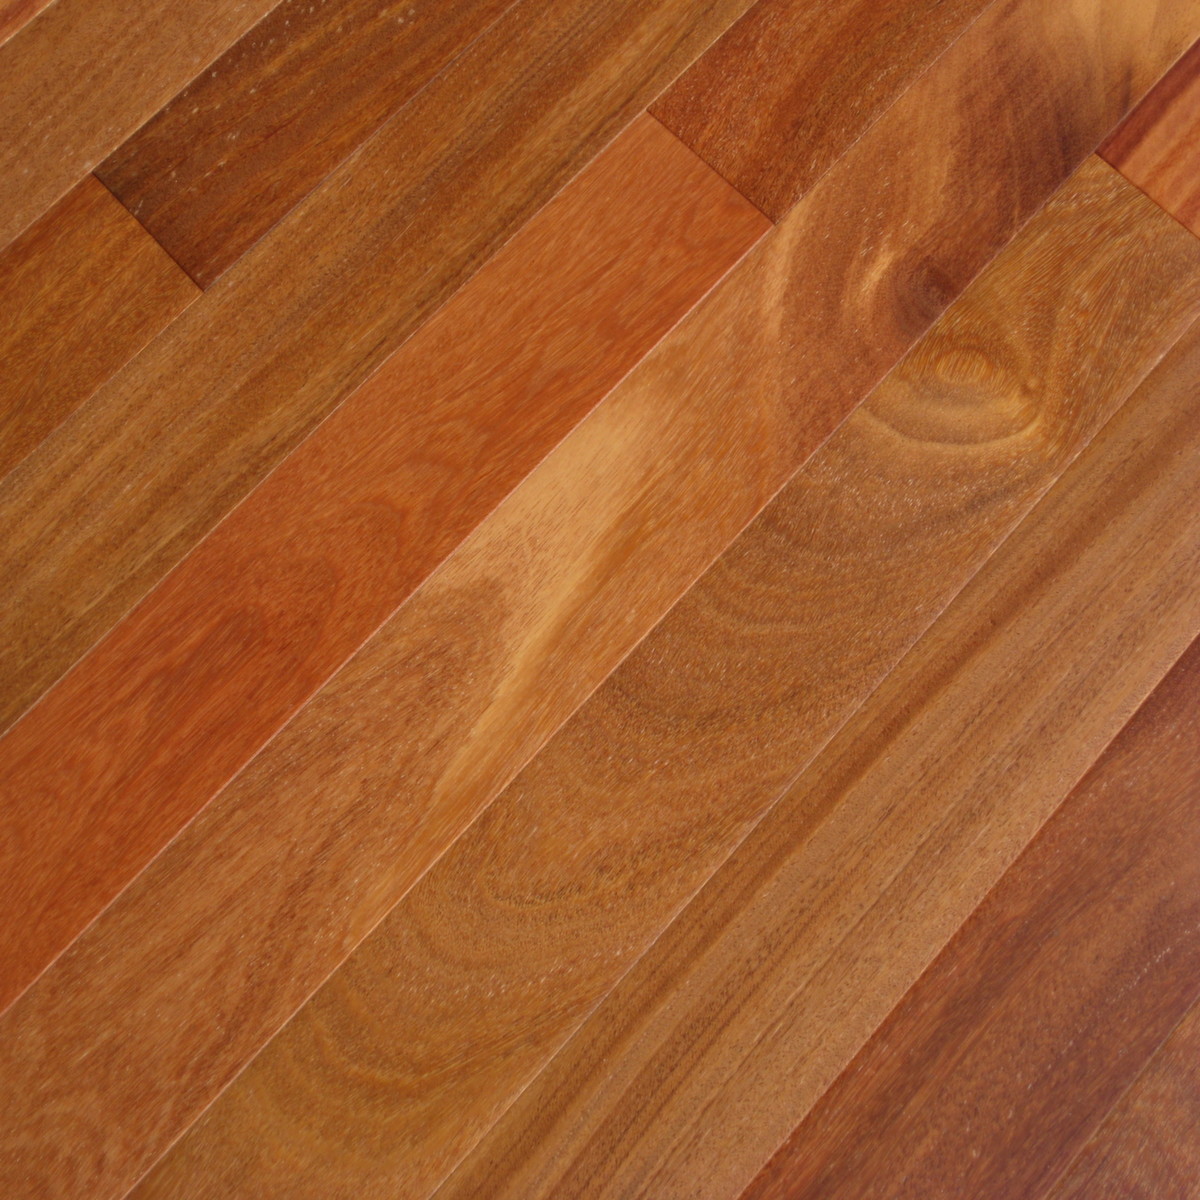 teak flooring cumaru dark (brazilian teak) hardwood flooring | prefinished solid hardwood  floors, elegance VGKGZYG